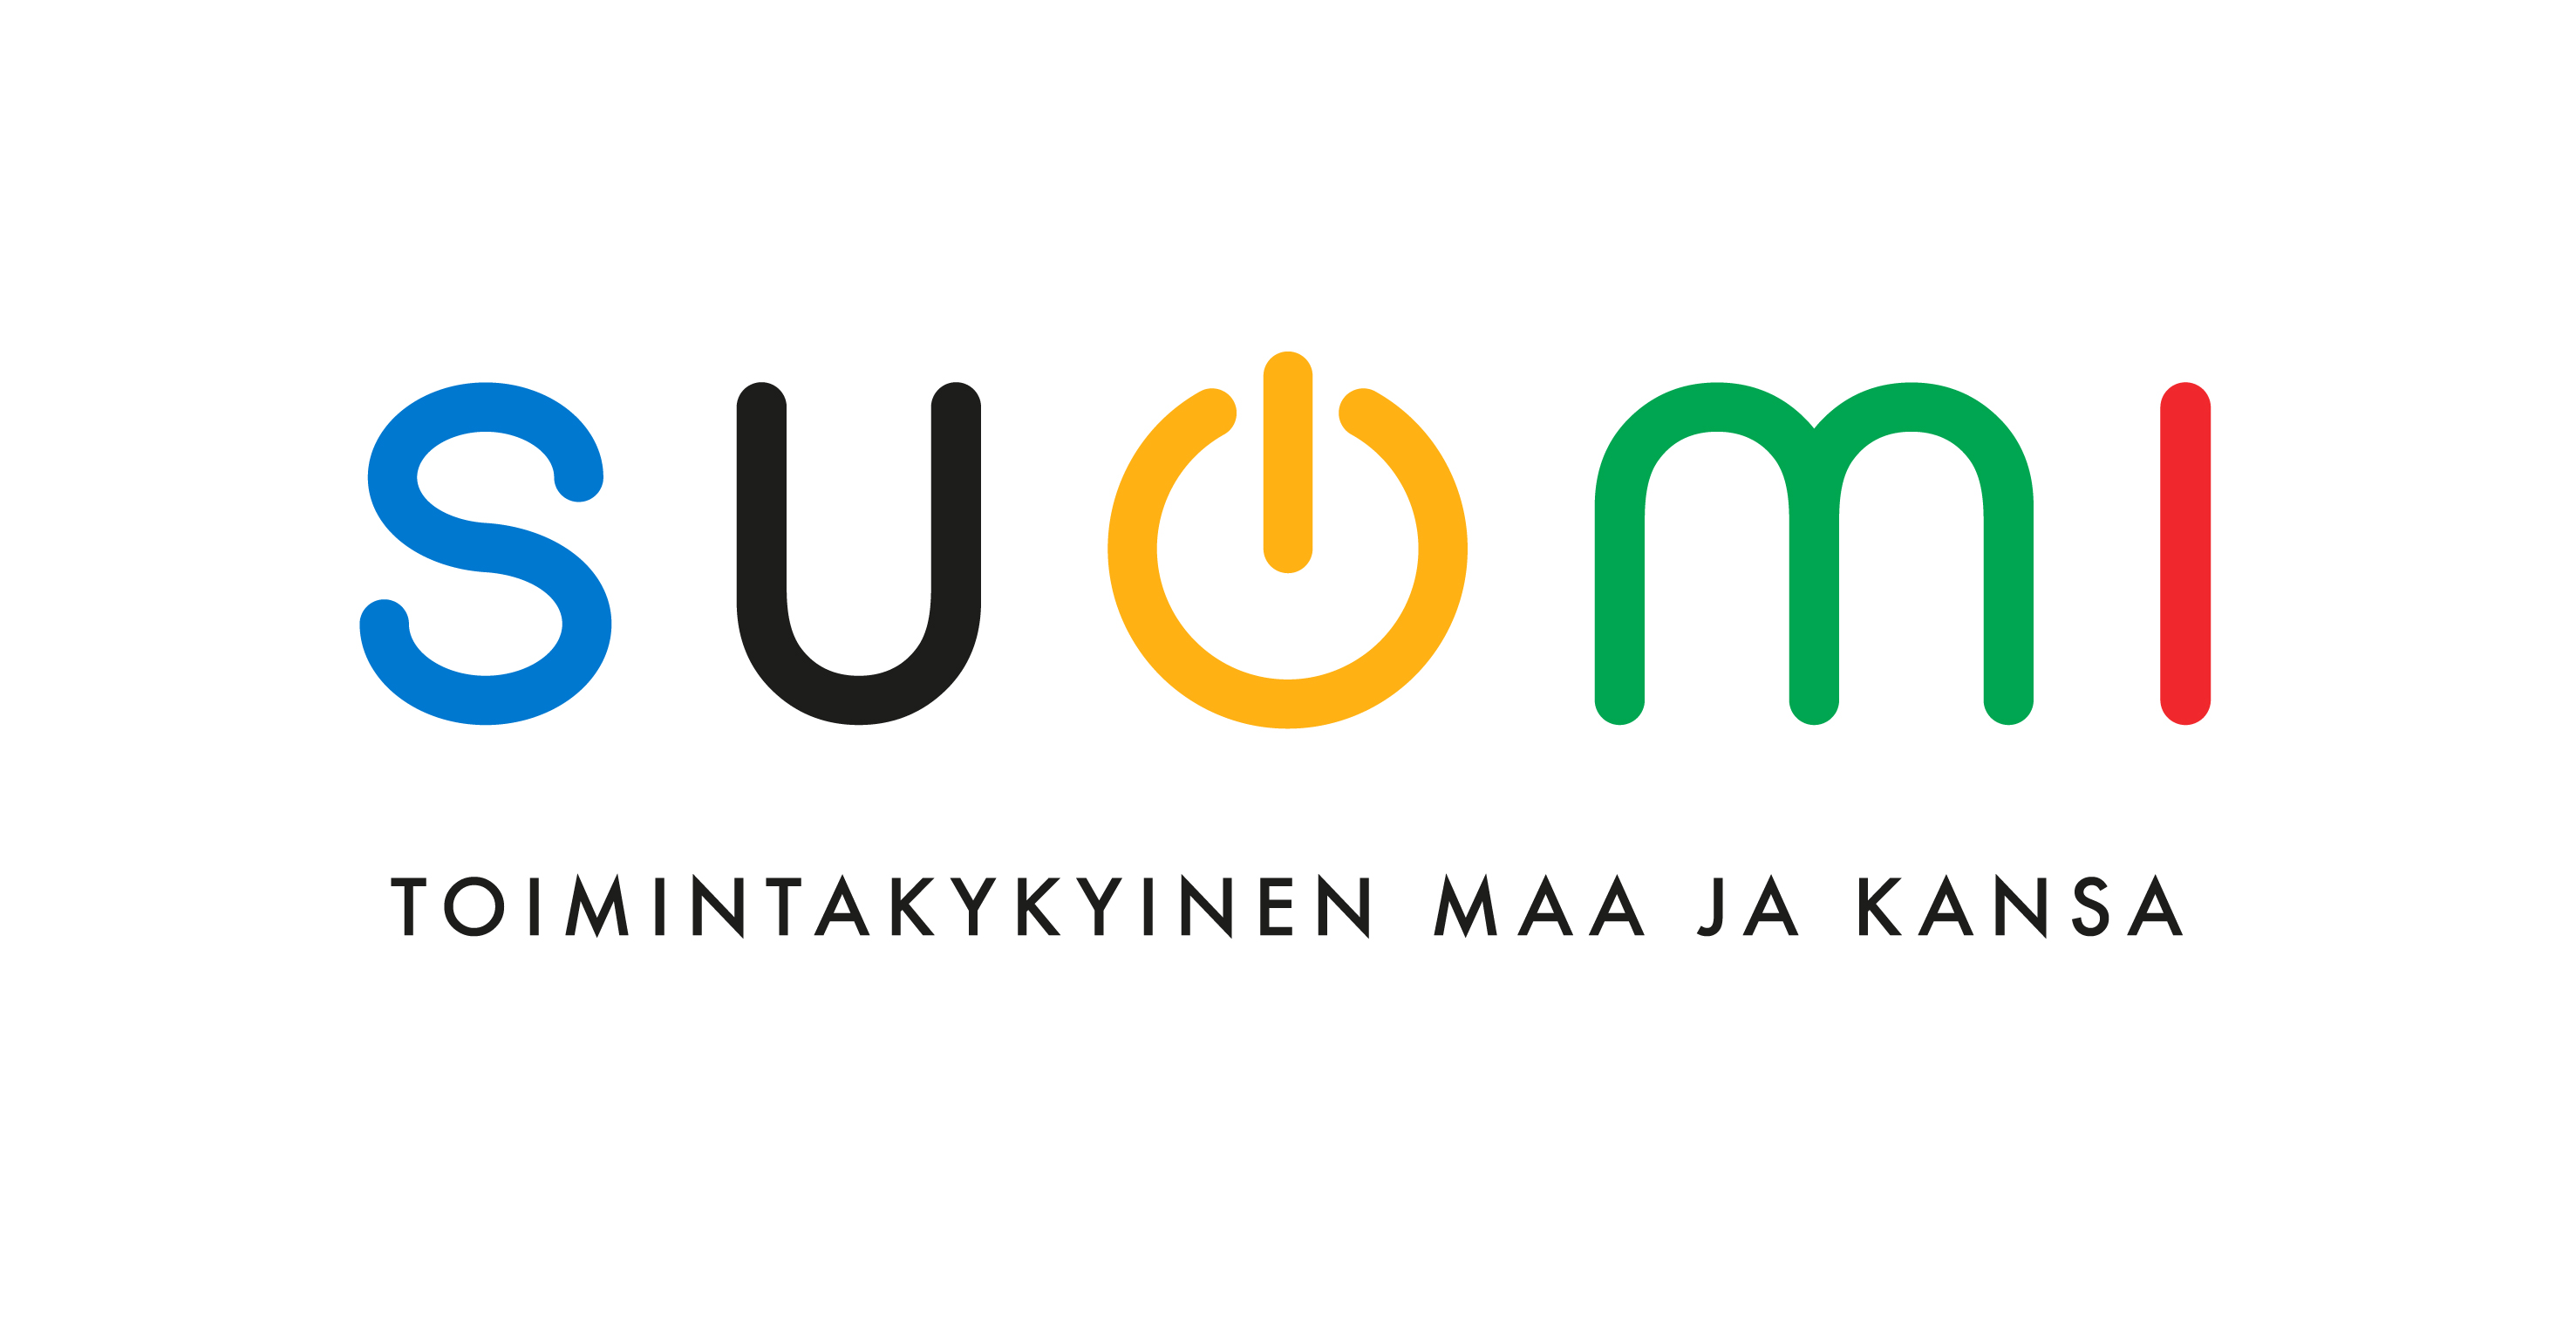 Suomi toimintakykyinen maa ja kansa logo